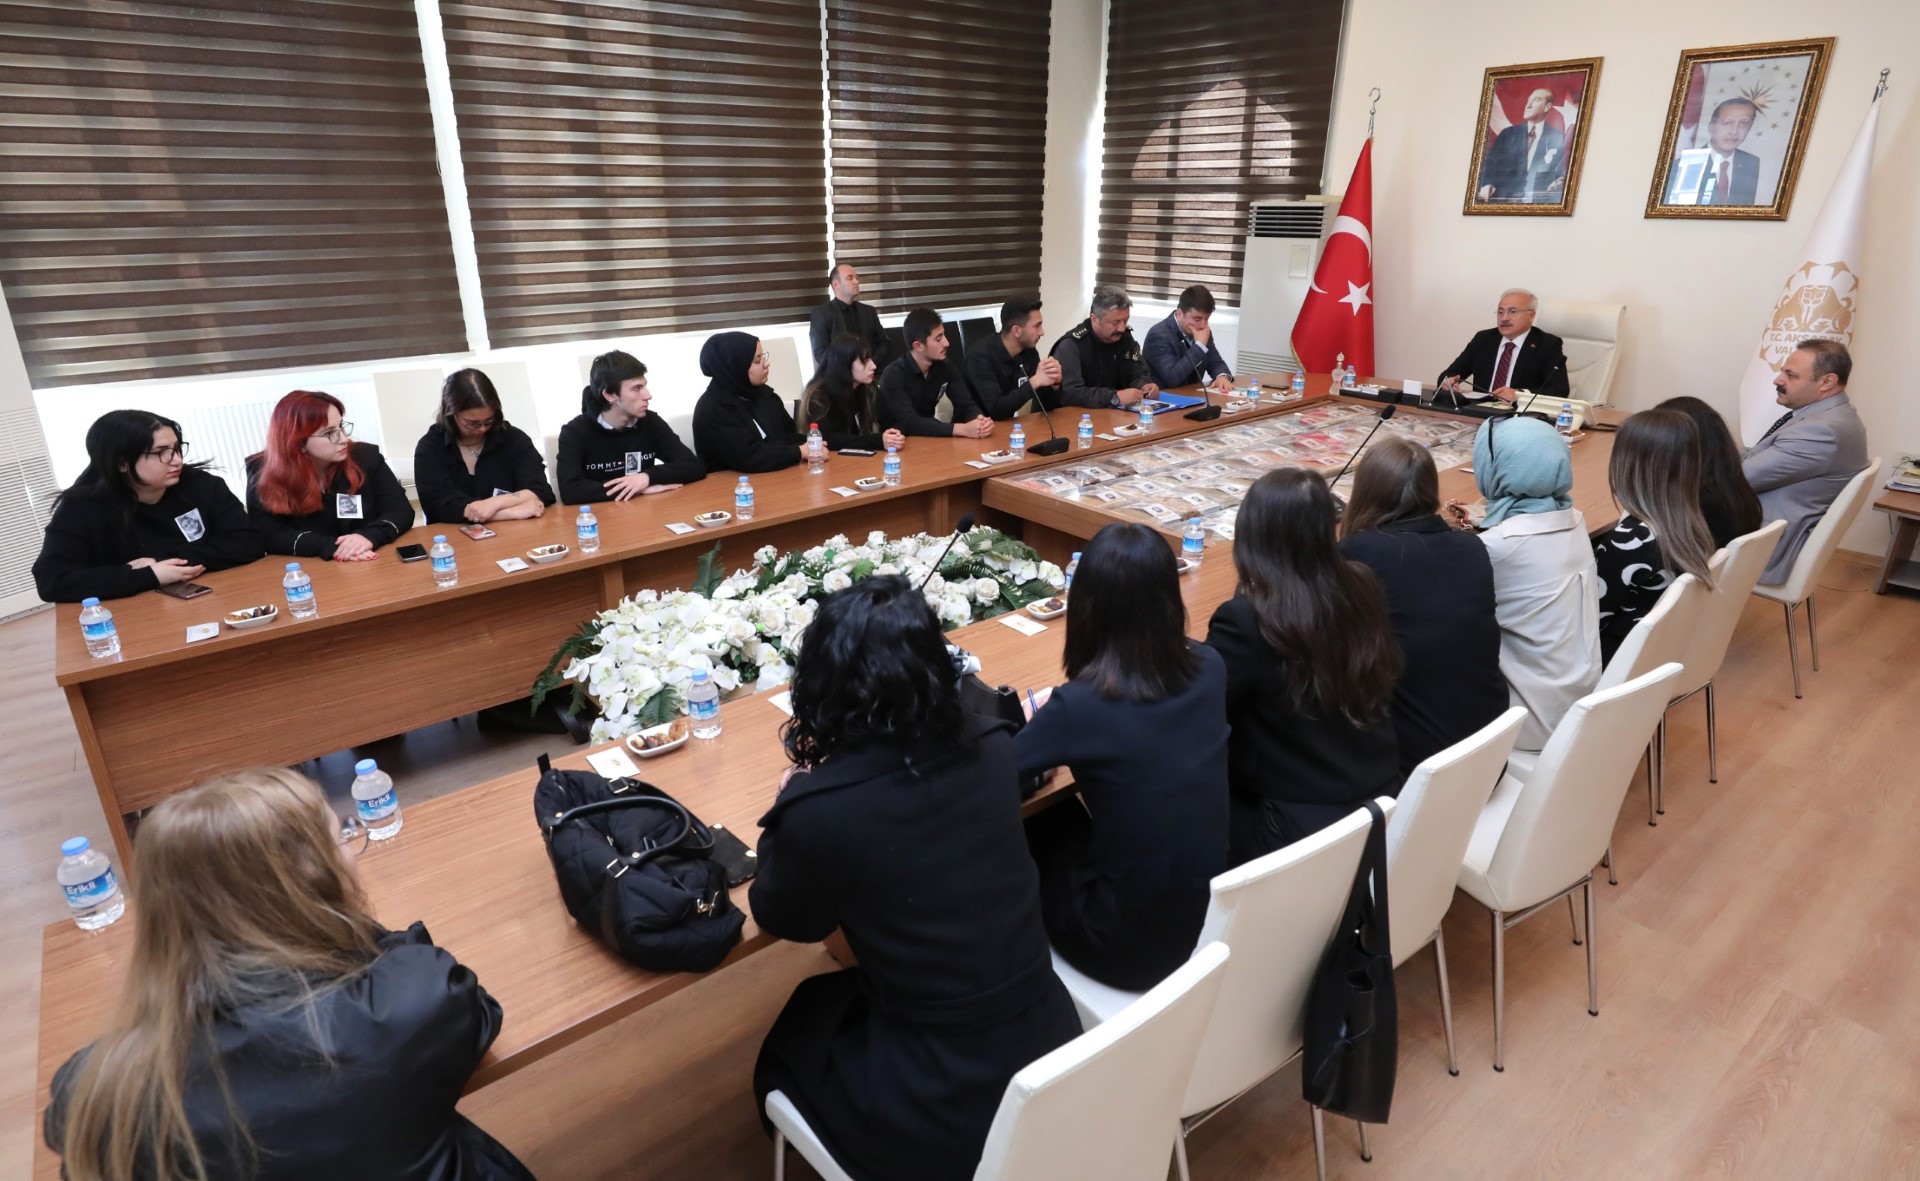 Aksaray Protokolü KYK yurtlarında kalan öğrenci temsilcilerini kabul etti